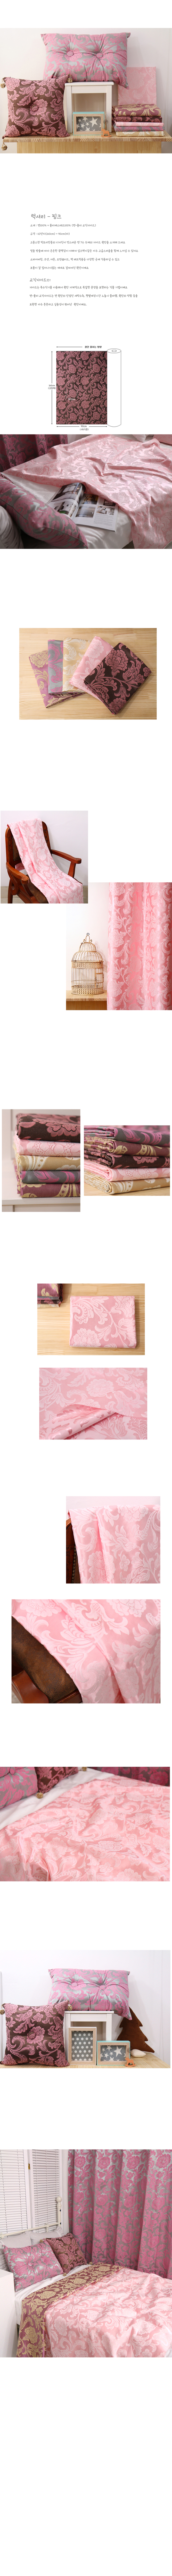 [대폭면쟈가드]럭셔리5color - 핑크